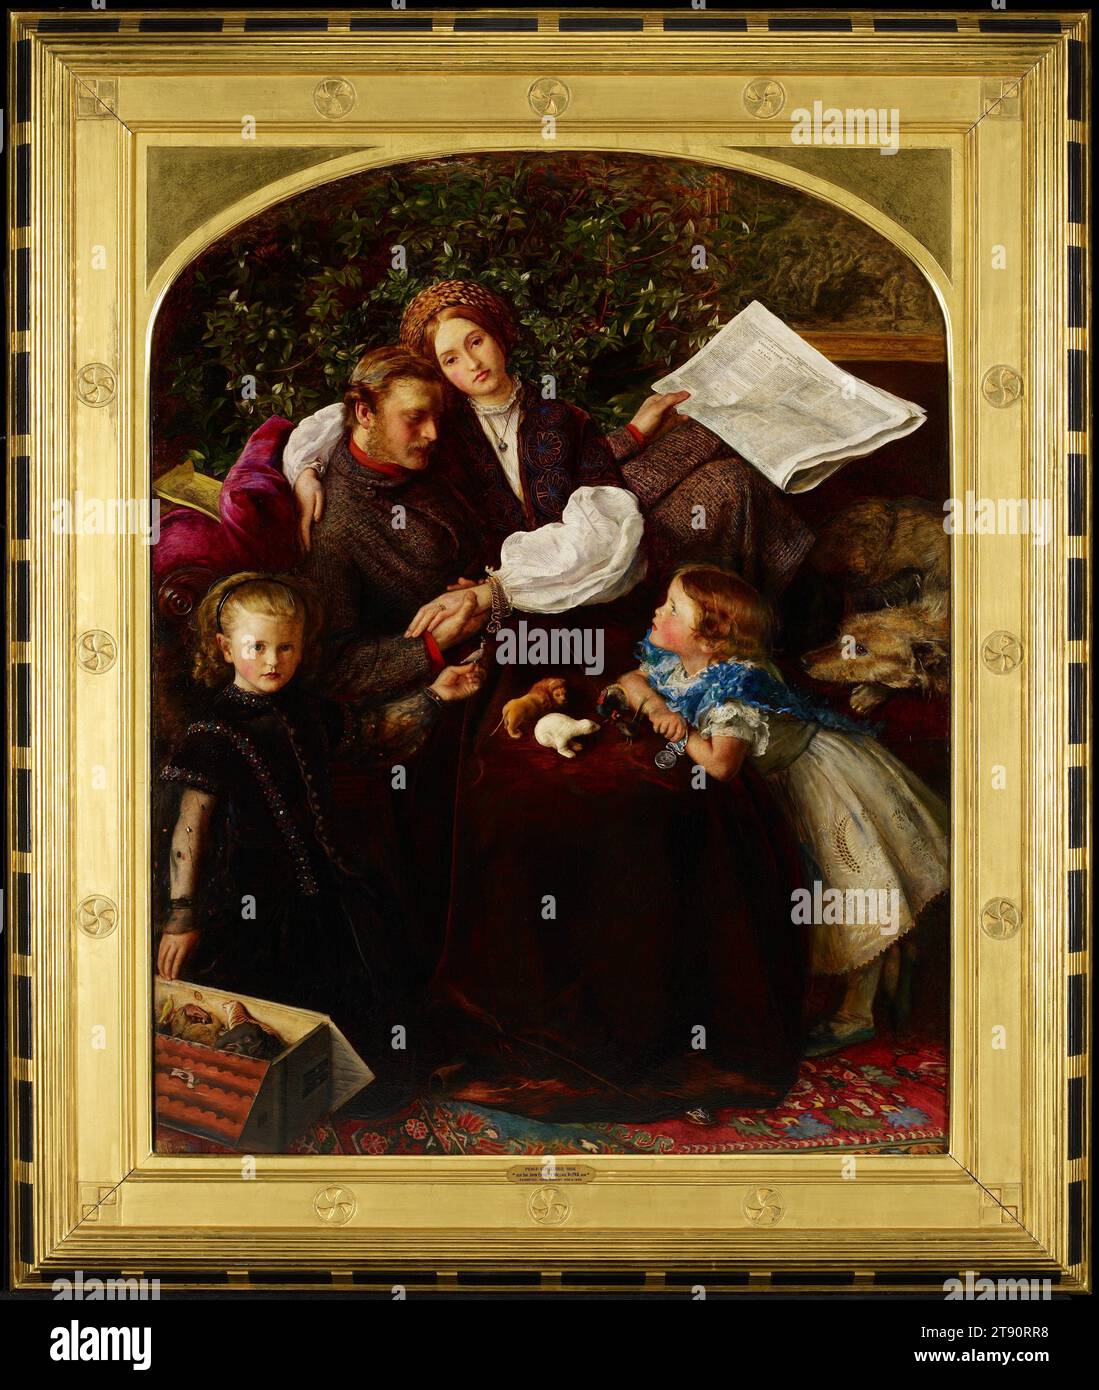 Frieden geschlossen, 1856, Sir John Everett Millais, Britisch, 1829 - 1896, 46 x 36 Zoll. (116,84 x 91,44 cm) (Leinwand)58 x 48 3/4 x 2 Zoll (147,32 x 123,83 x 5,08 cm) (Außenrahmen), Öl auf Leinwand, England, 19. Jahrhundert, auf den ersten Blick scheint dies ein Familienporträt zu sein, komplett mit realistischen Details der bürgerlichen englischen Einrichtung. Tatsächlich ist es eine inszenierte Szene der inneren Harmonie, die das Ende des Krimkrieges feiert. Der Vater, ein verwundeter Offizier, hat eine Kopie der Times, die das Ende des Krieges ankündigt Eine Tochter schließt seine Kampfmedaille. Auf dem Schoß der Mutter, vier Tiere aus dem Spielzeug Noah's Ark Stockfoto